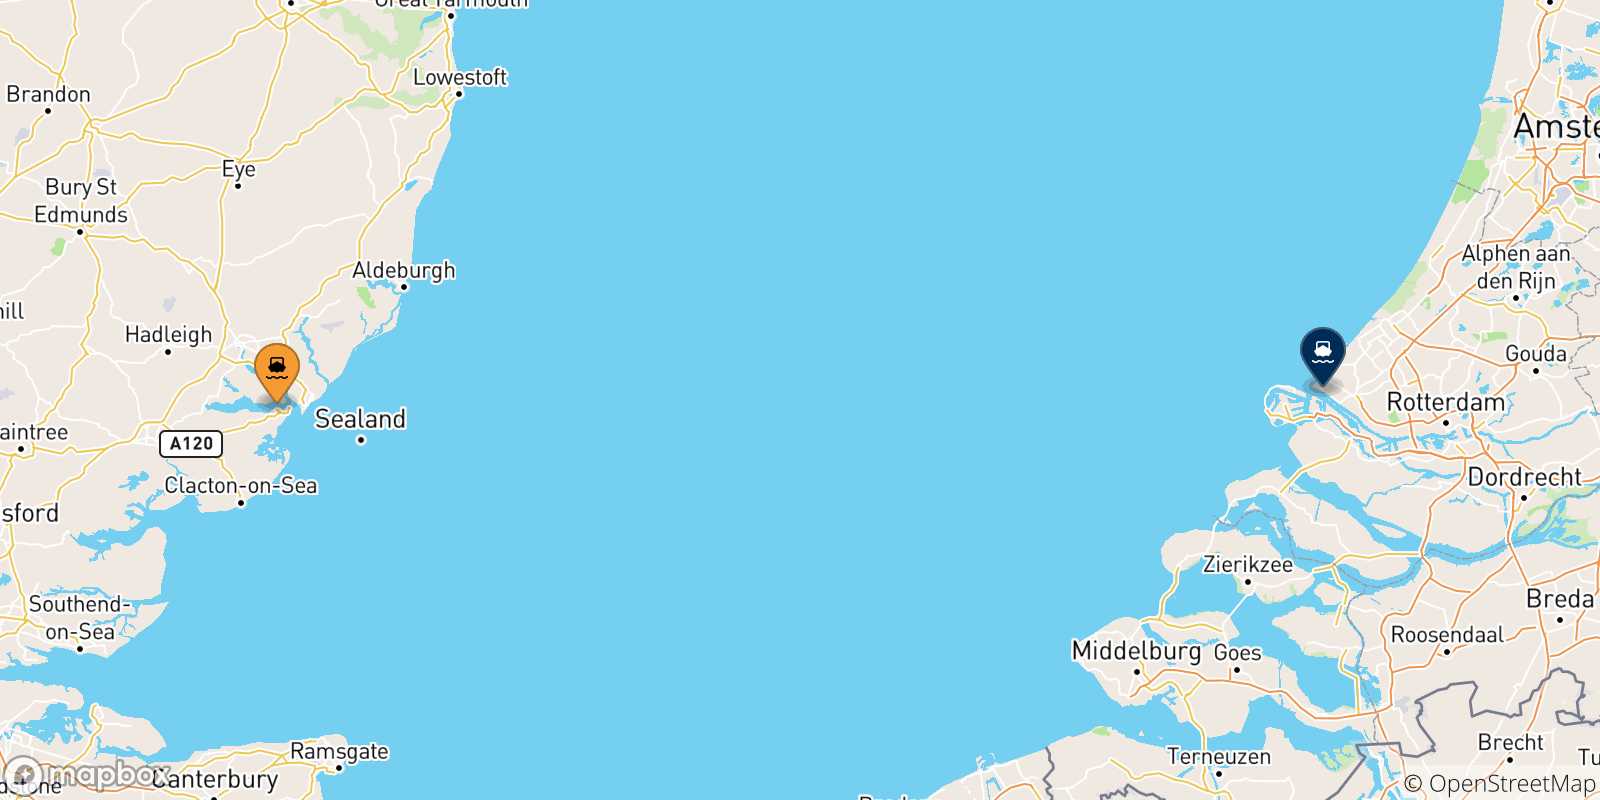 Mappa delle possibili rotte tra Harwich e l'Olanda